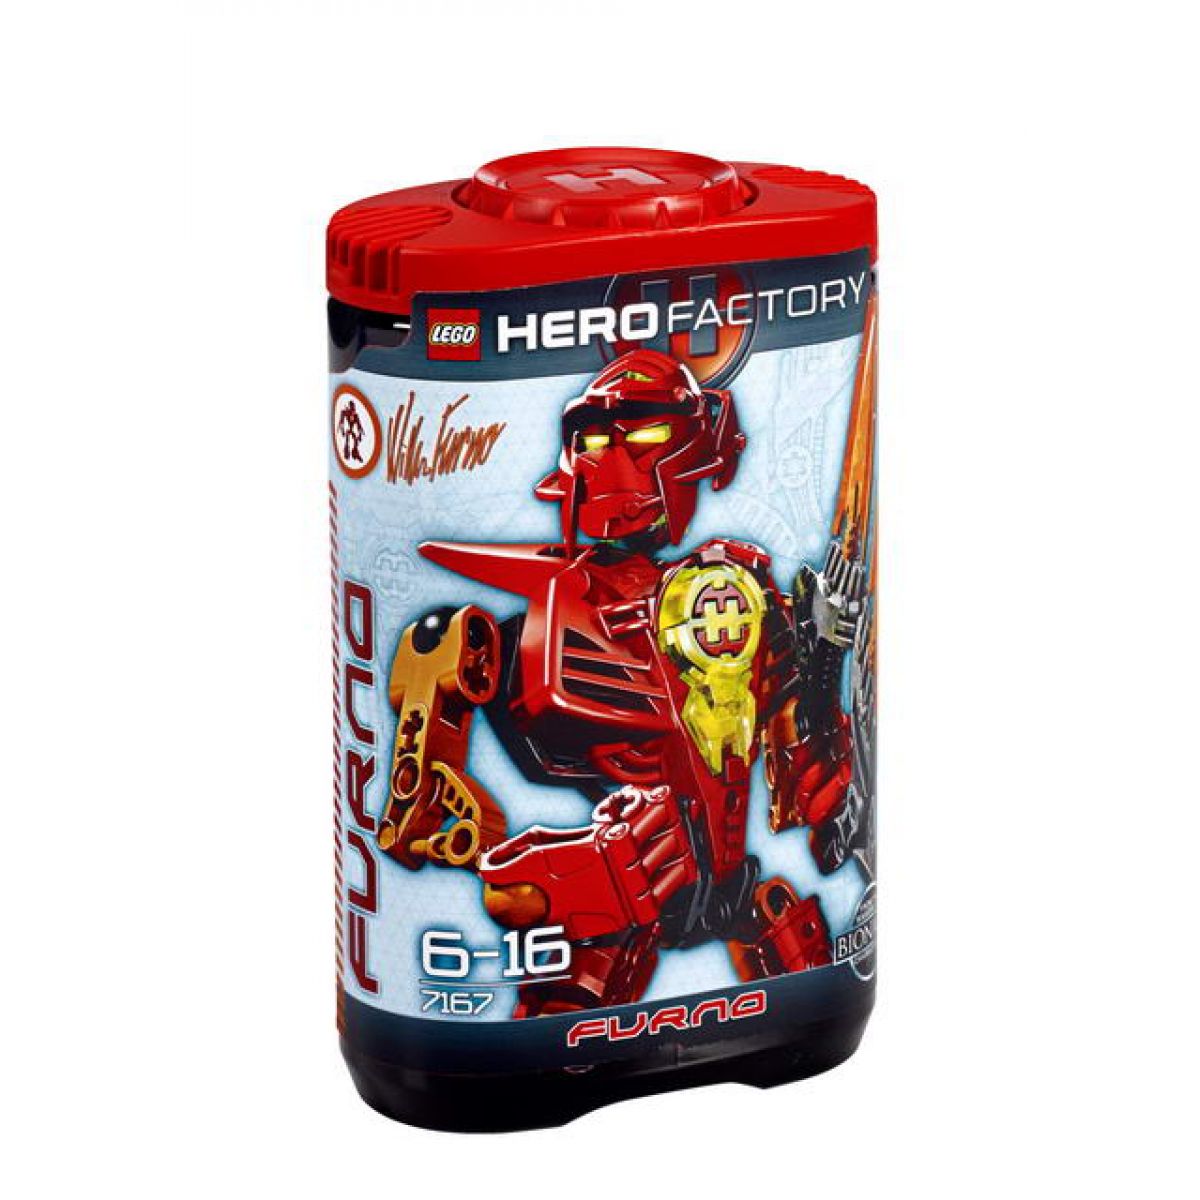 LEGO Hero Factory 7167 William Furno